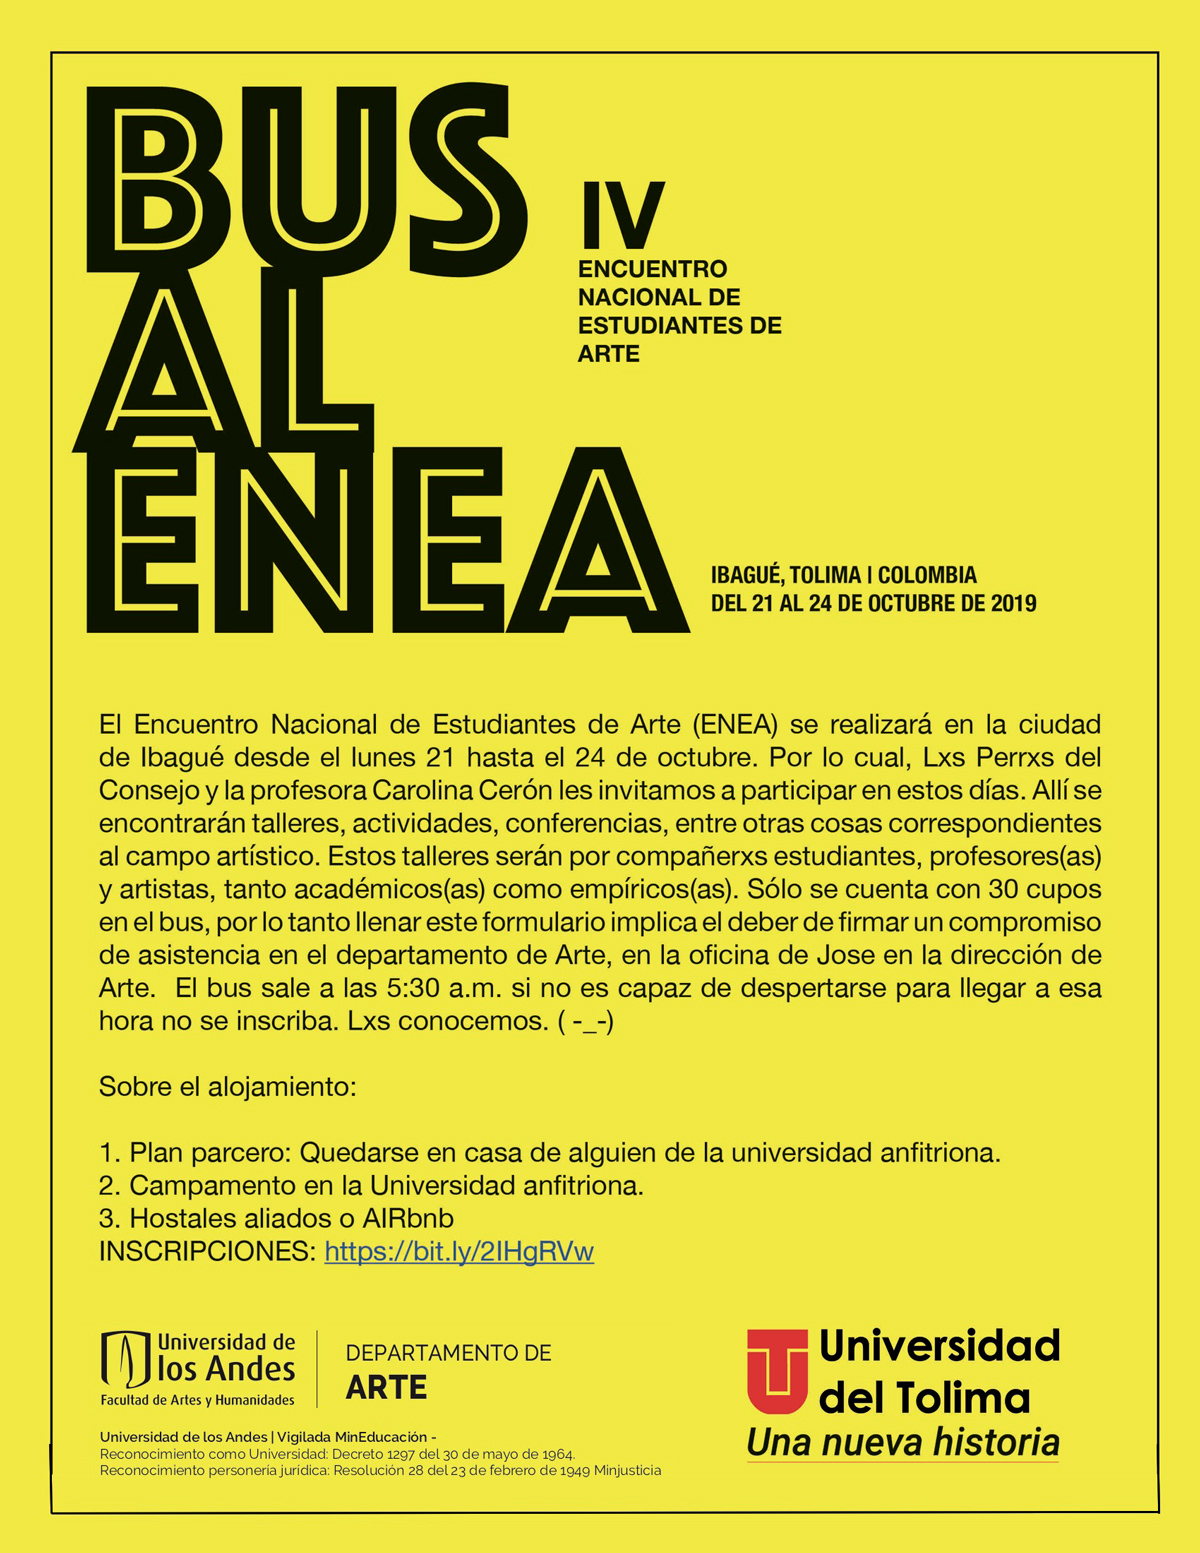 Bus al Enea – Encuentro Nacional de Estudiantes de Arte